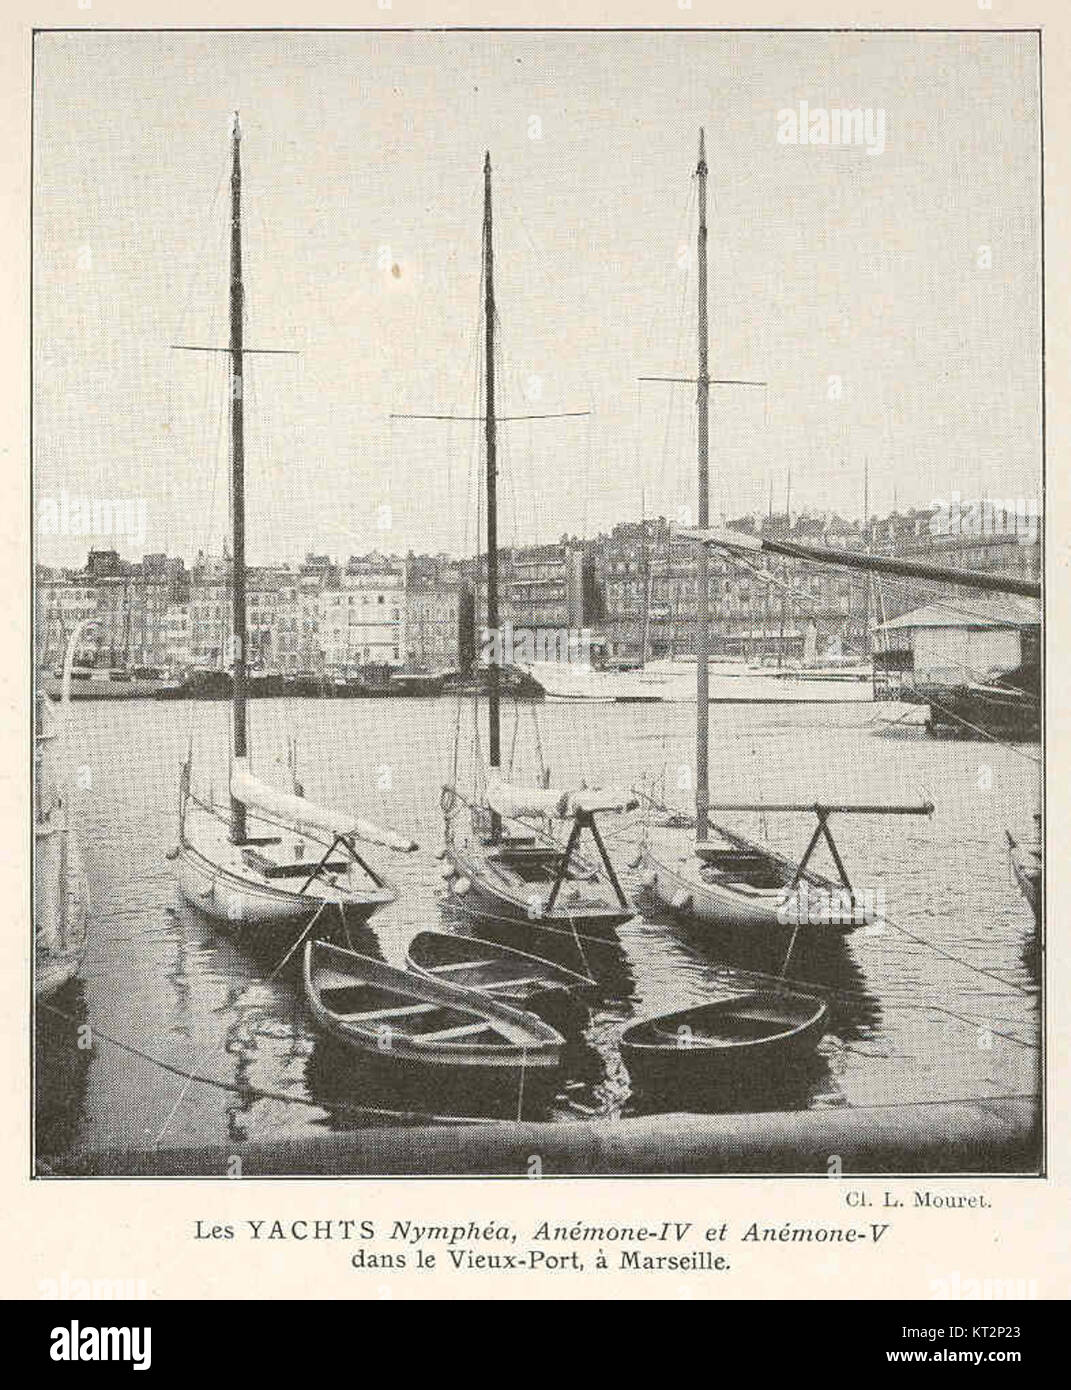 37378 Yachts Nymphe, Anemone-IV, et Anemone-V dans le Vieux-Port, a Marseille Stock Photo